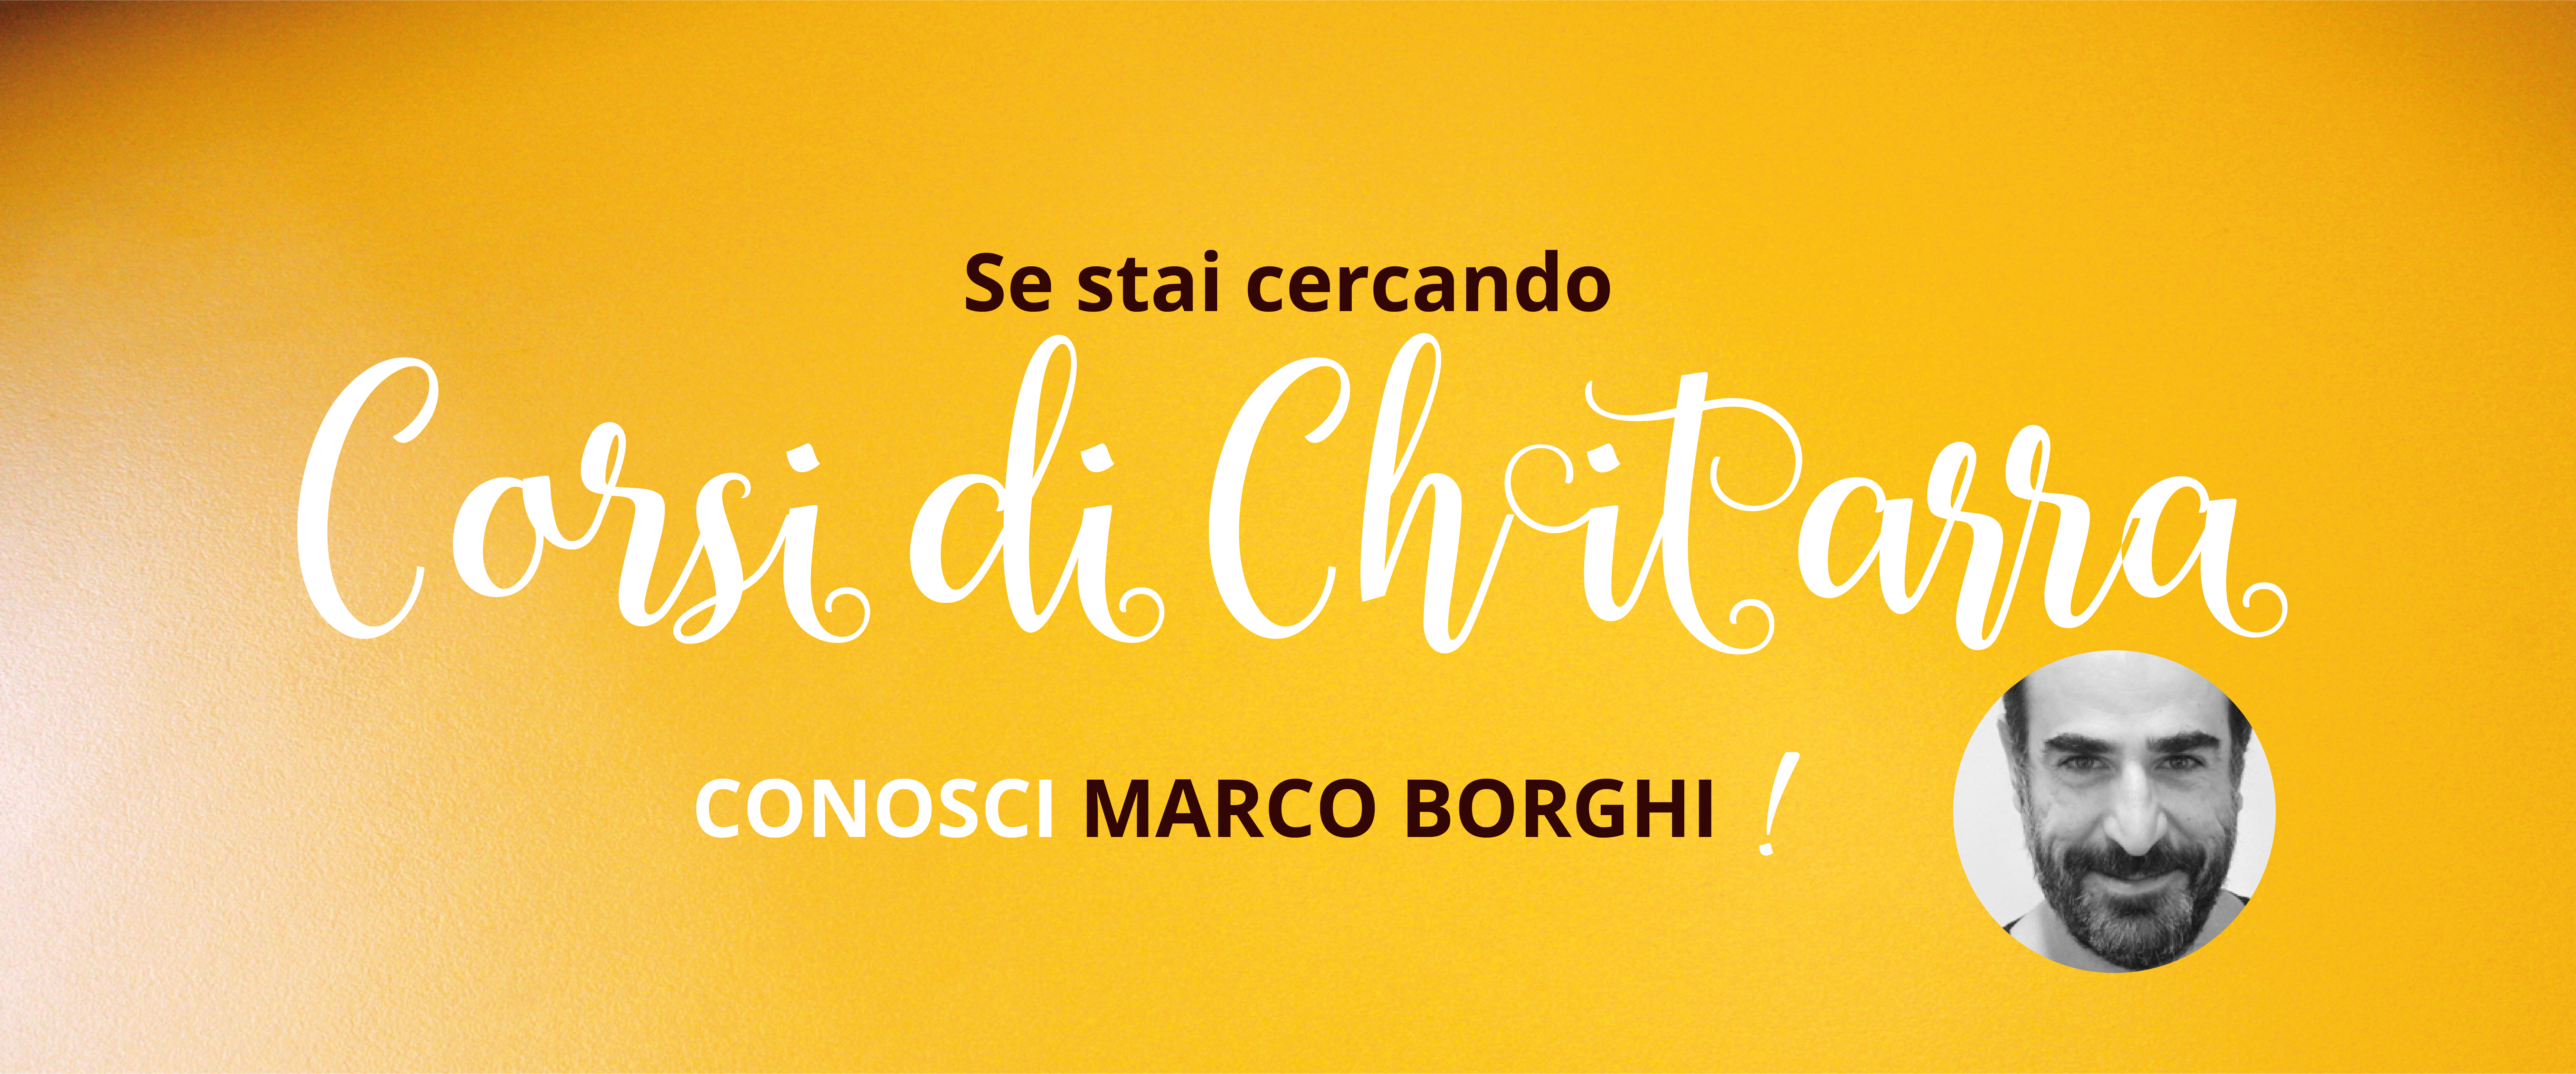 Spazio per me, Marco Borghi, Corsi di Chitarra.